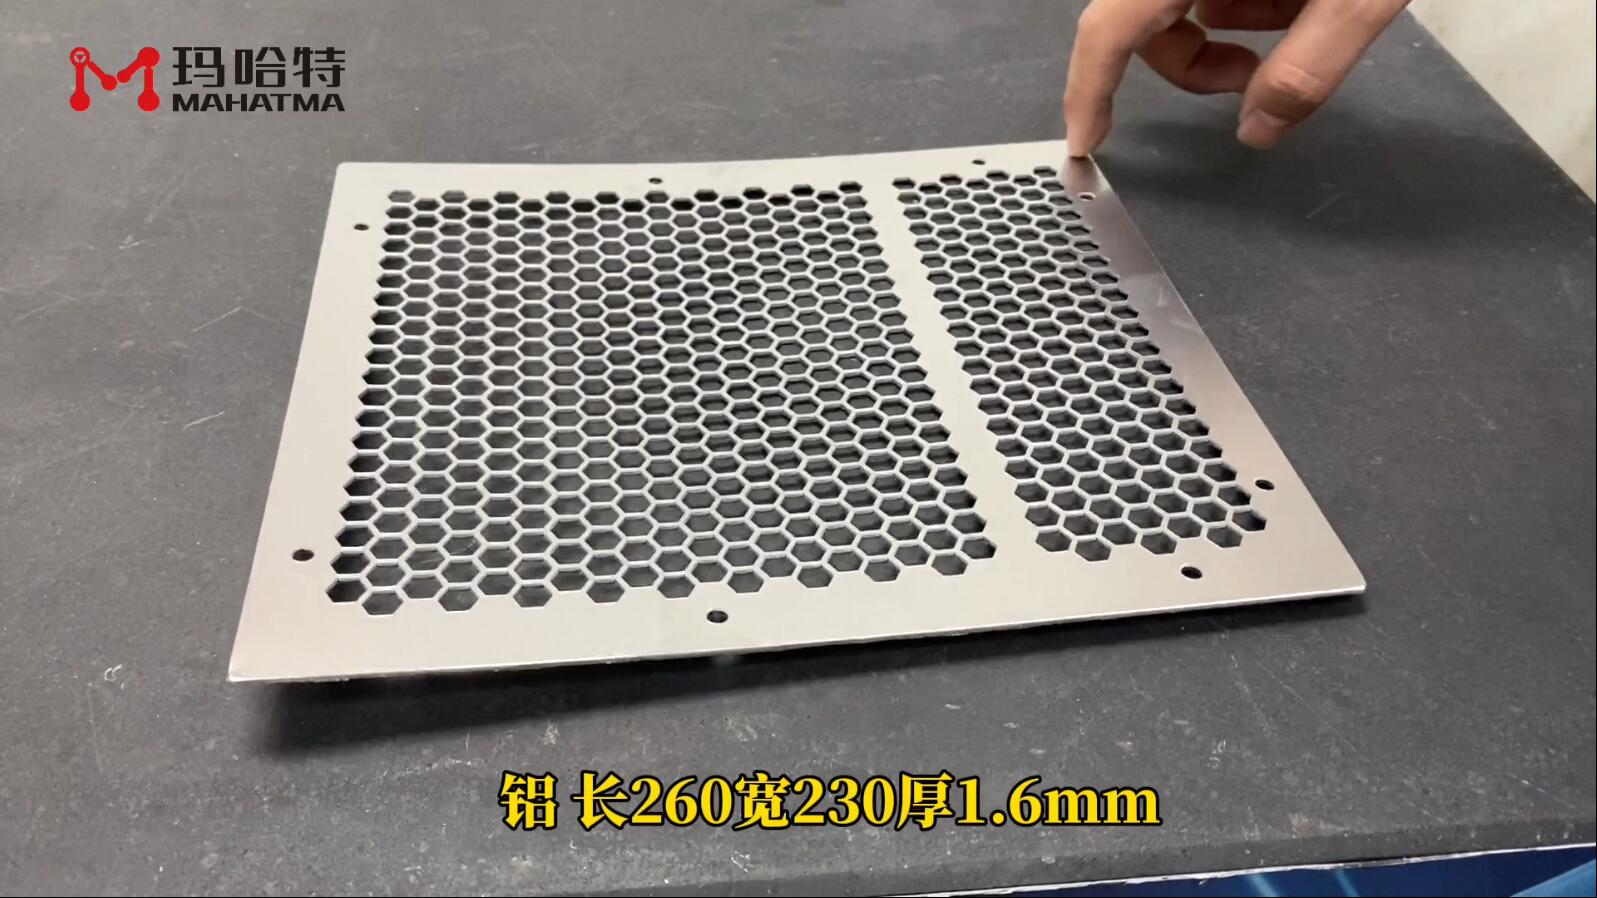 铝 MHT30-1300 长方形 长260宽230厚1.6mm